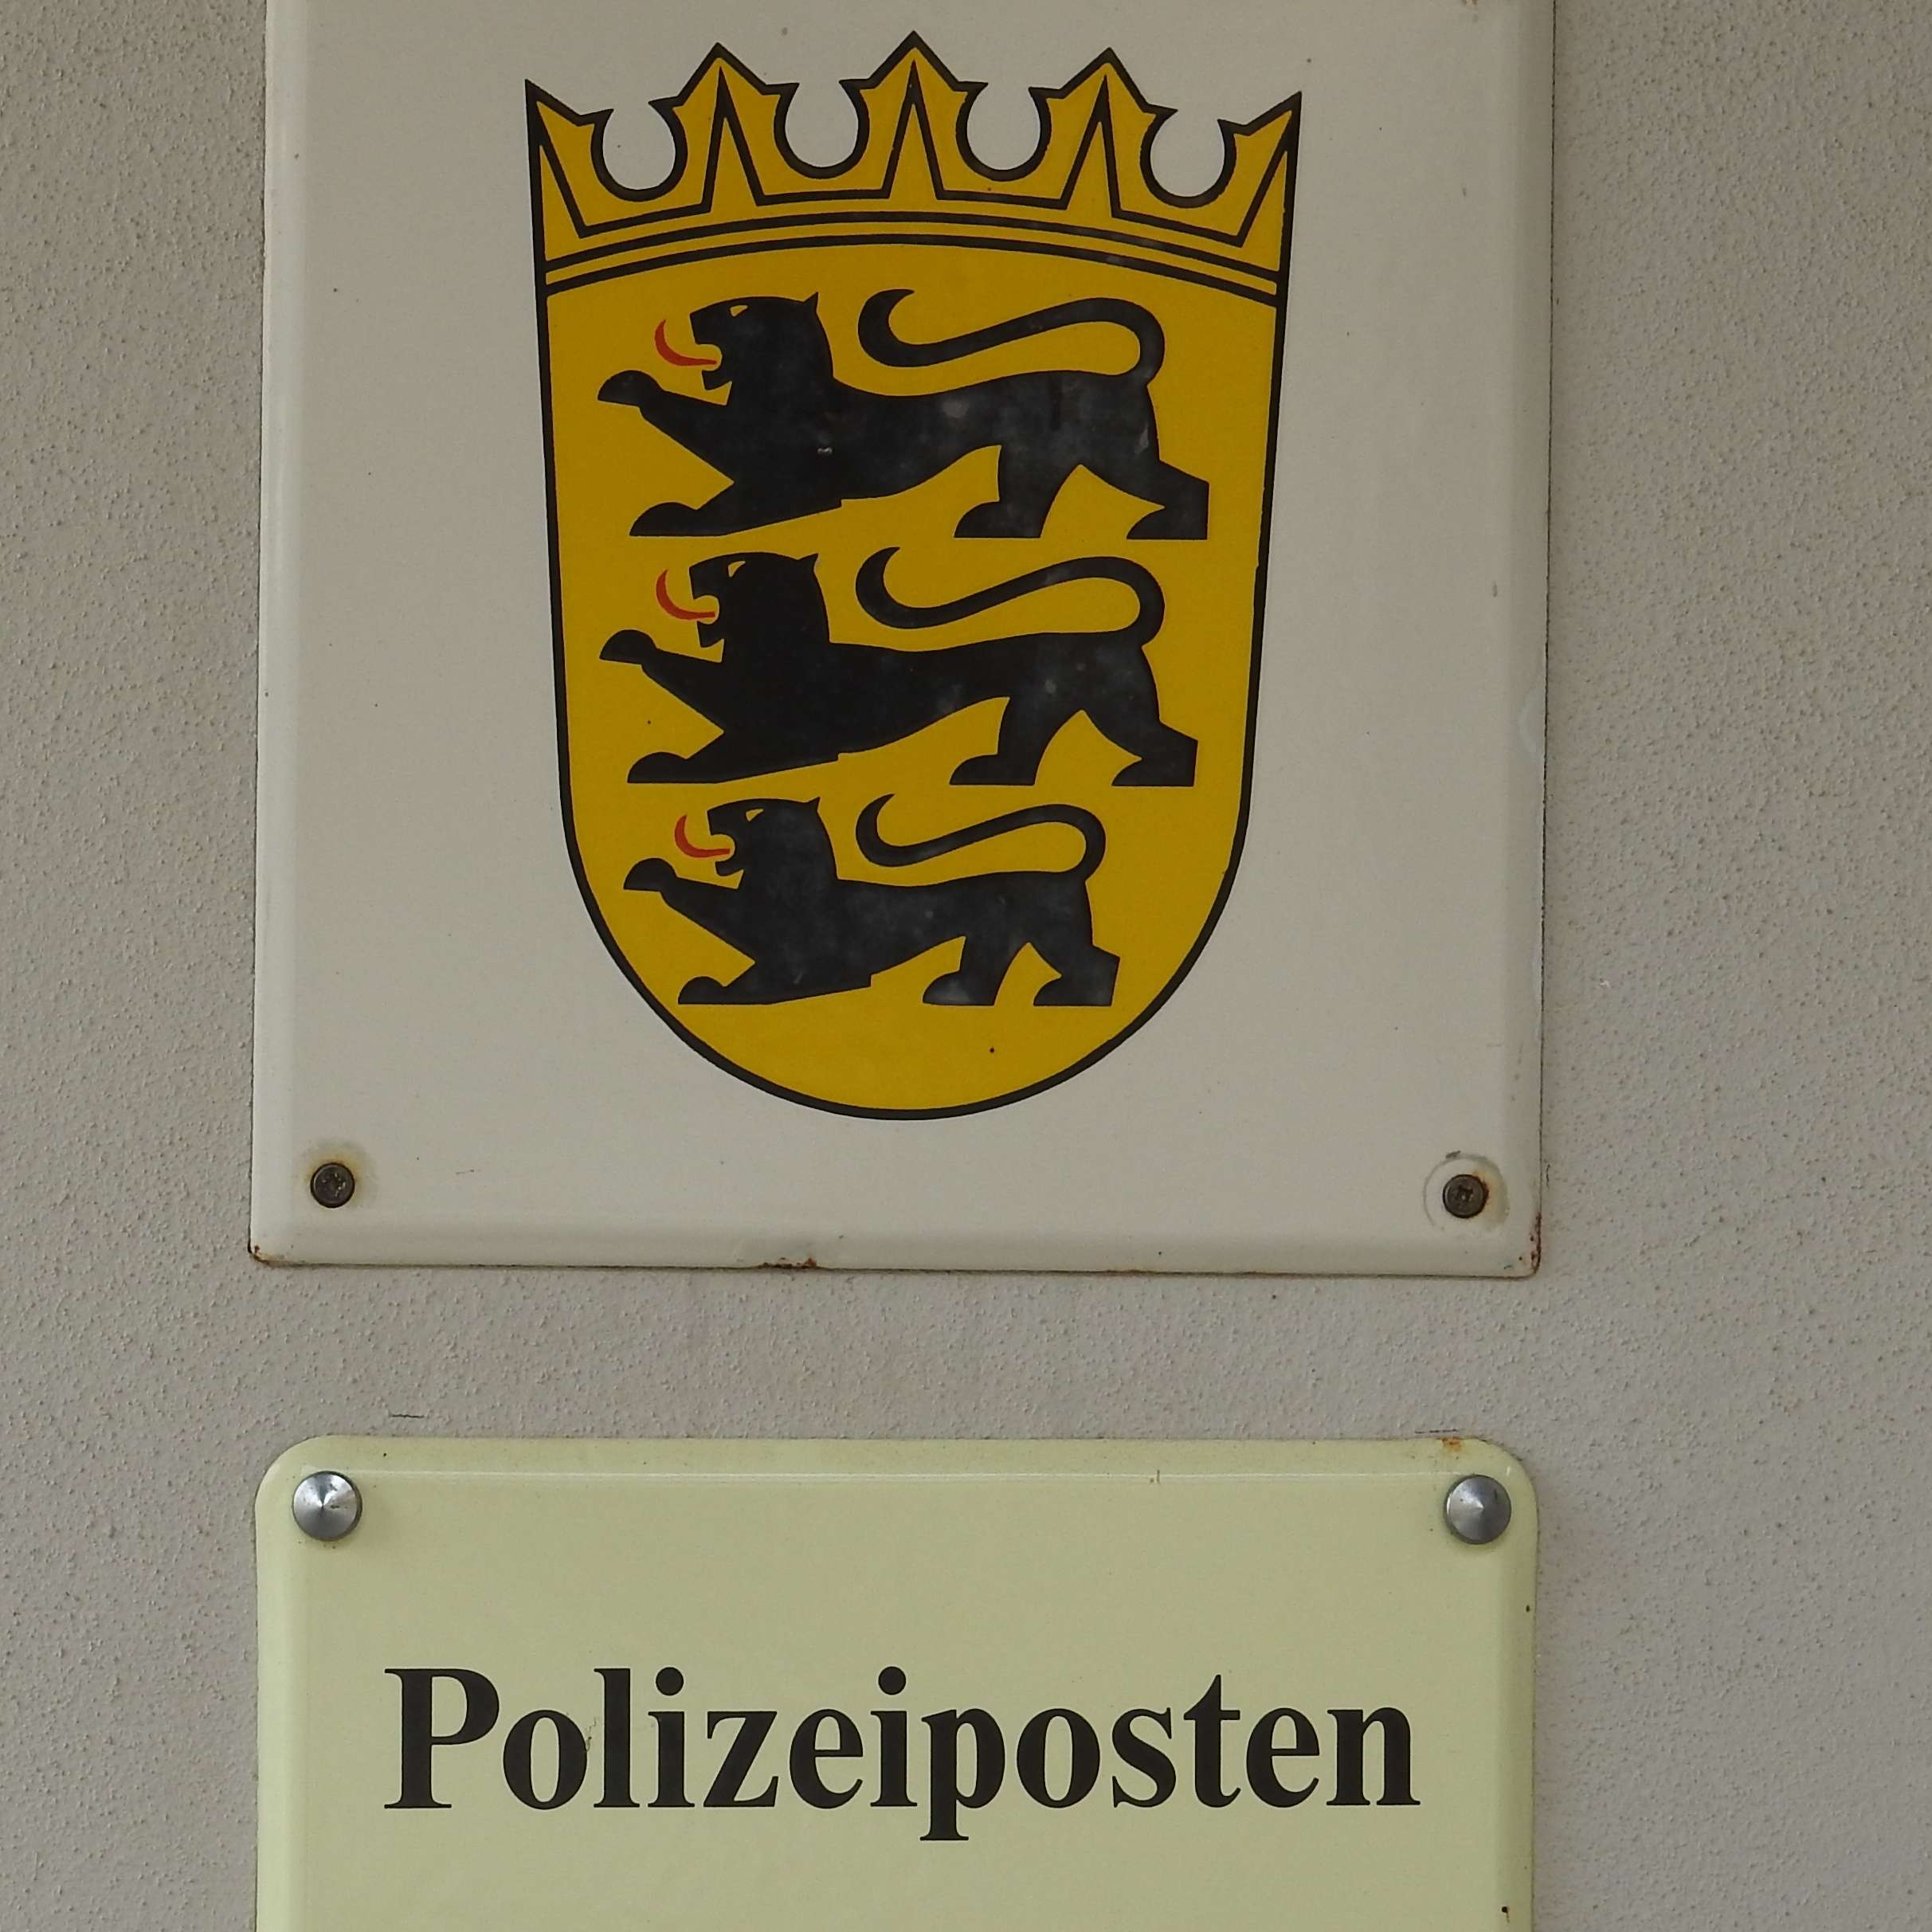  Polizeiposten 